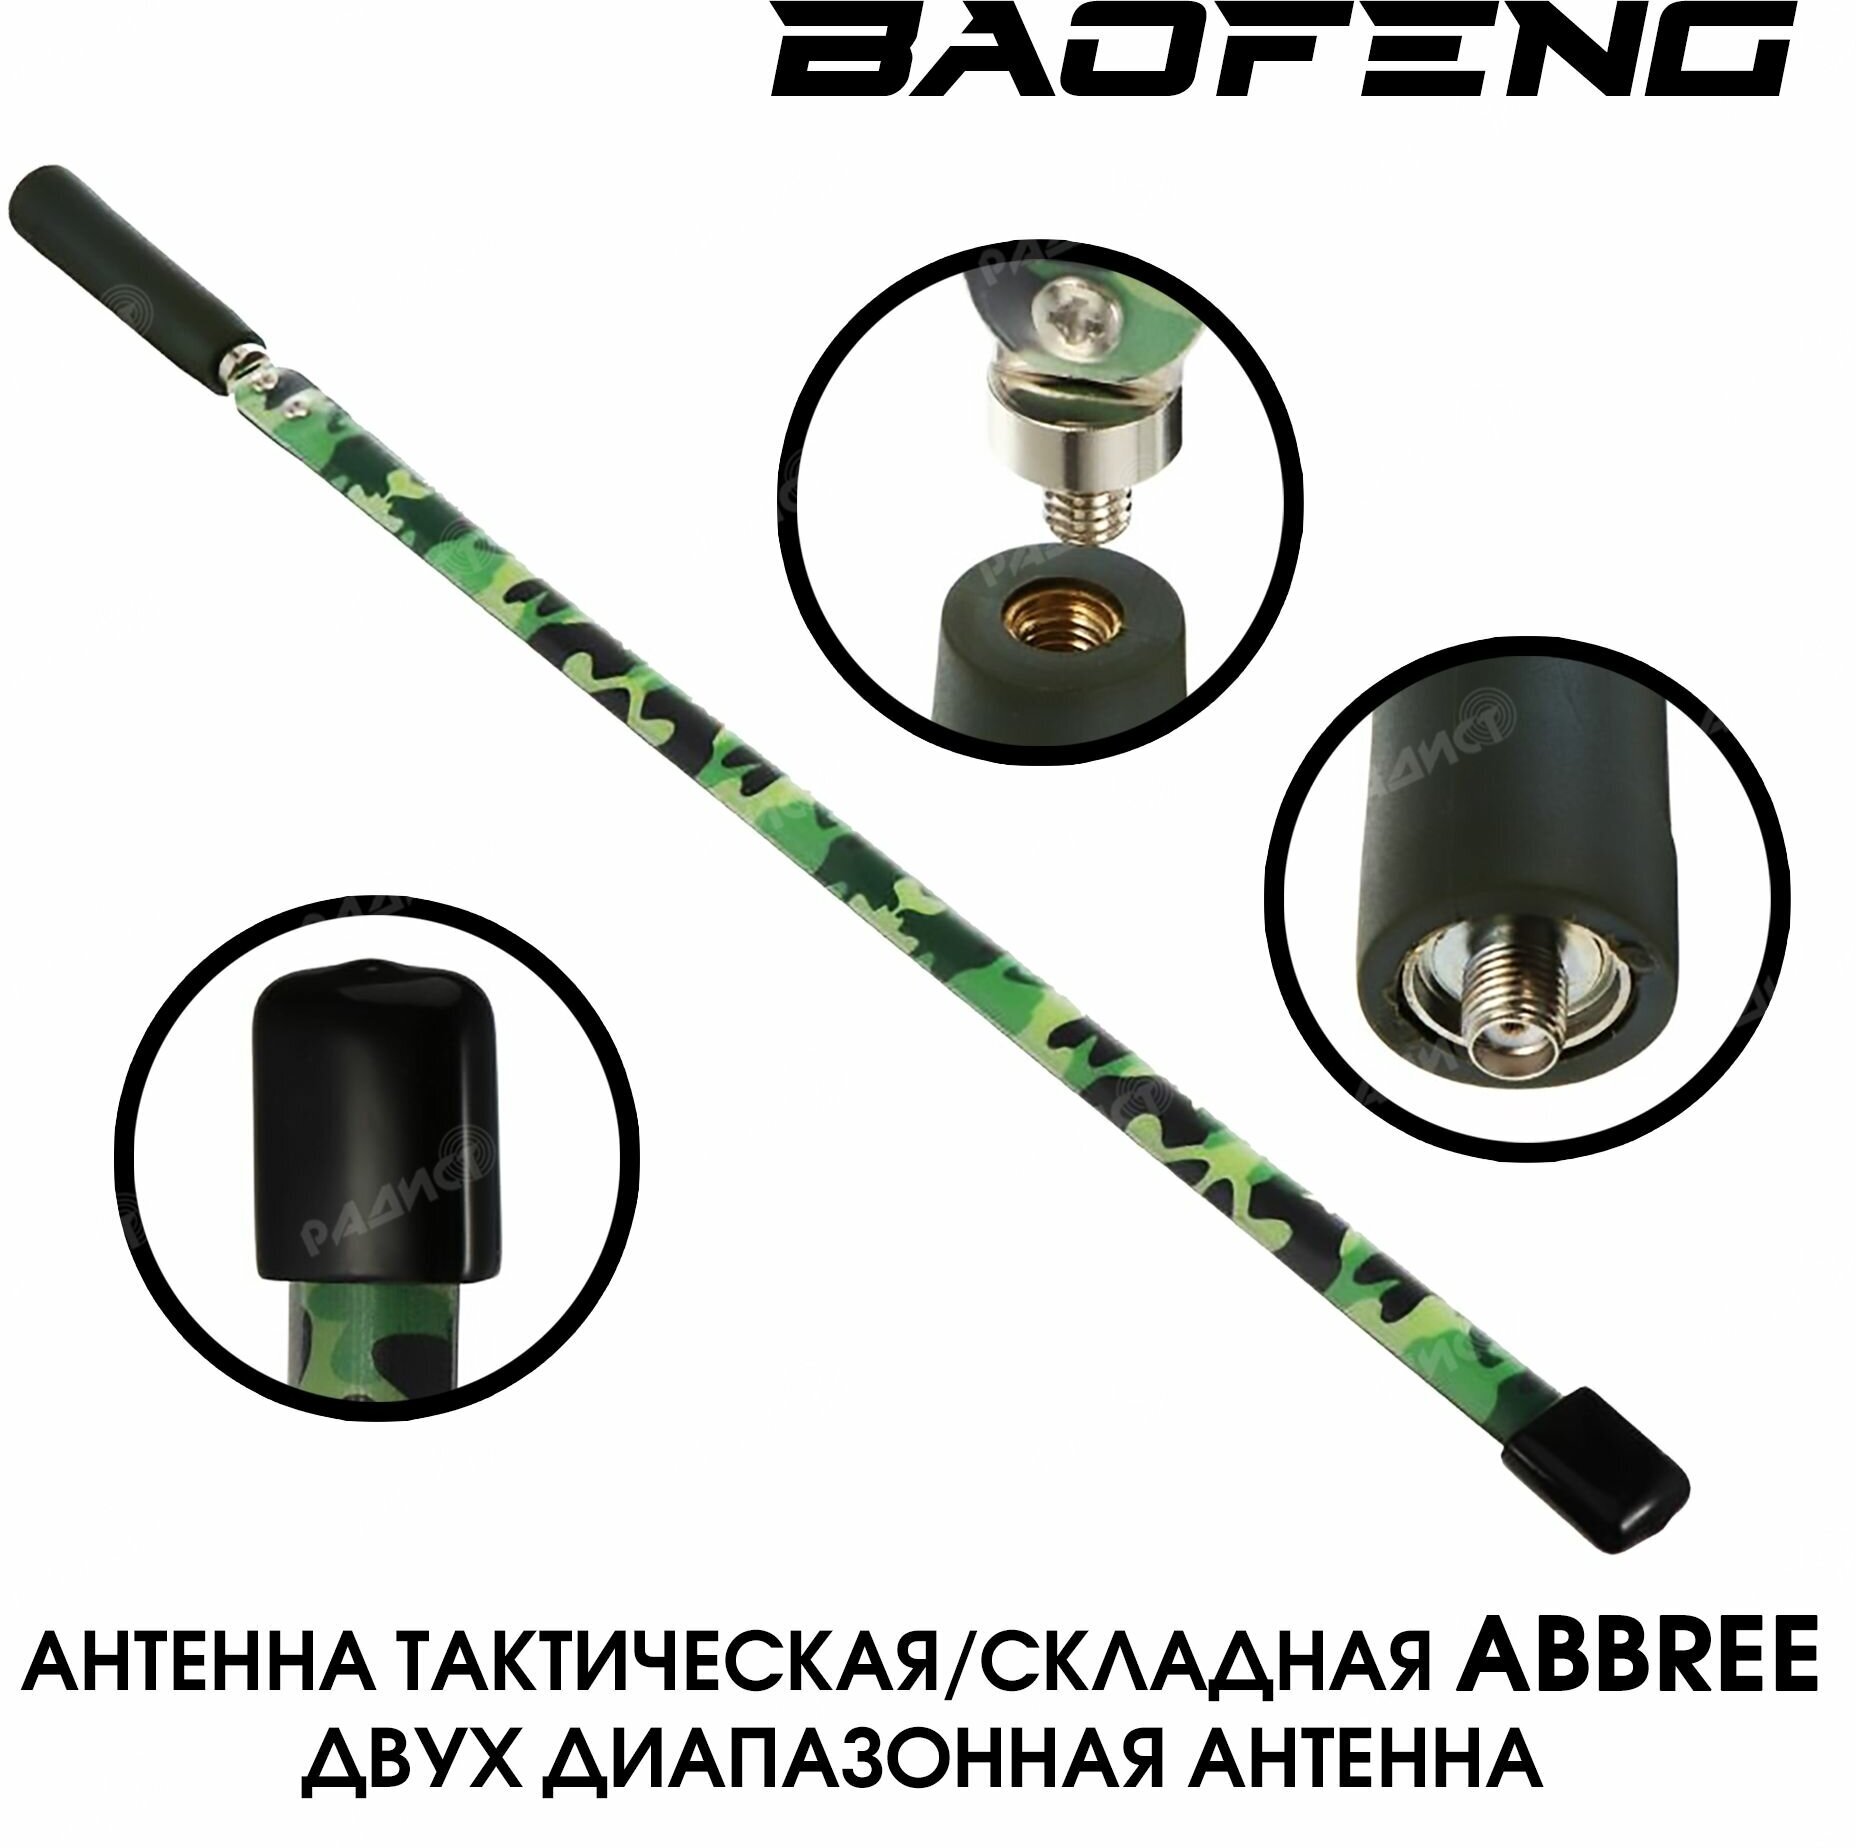 Антенна ABREE складная (тактическая) камуфляж для раций Baofeng